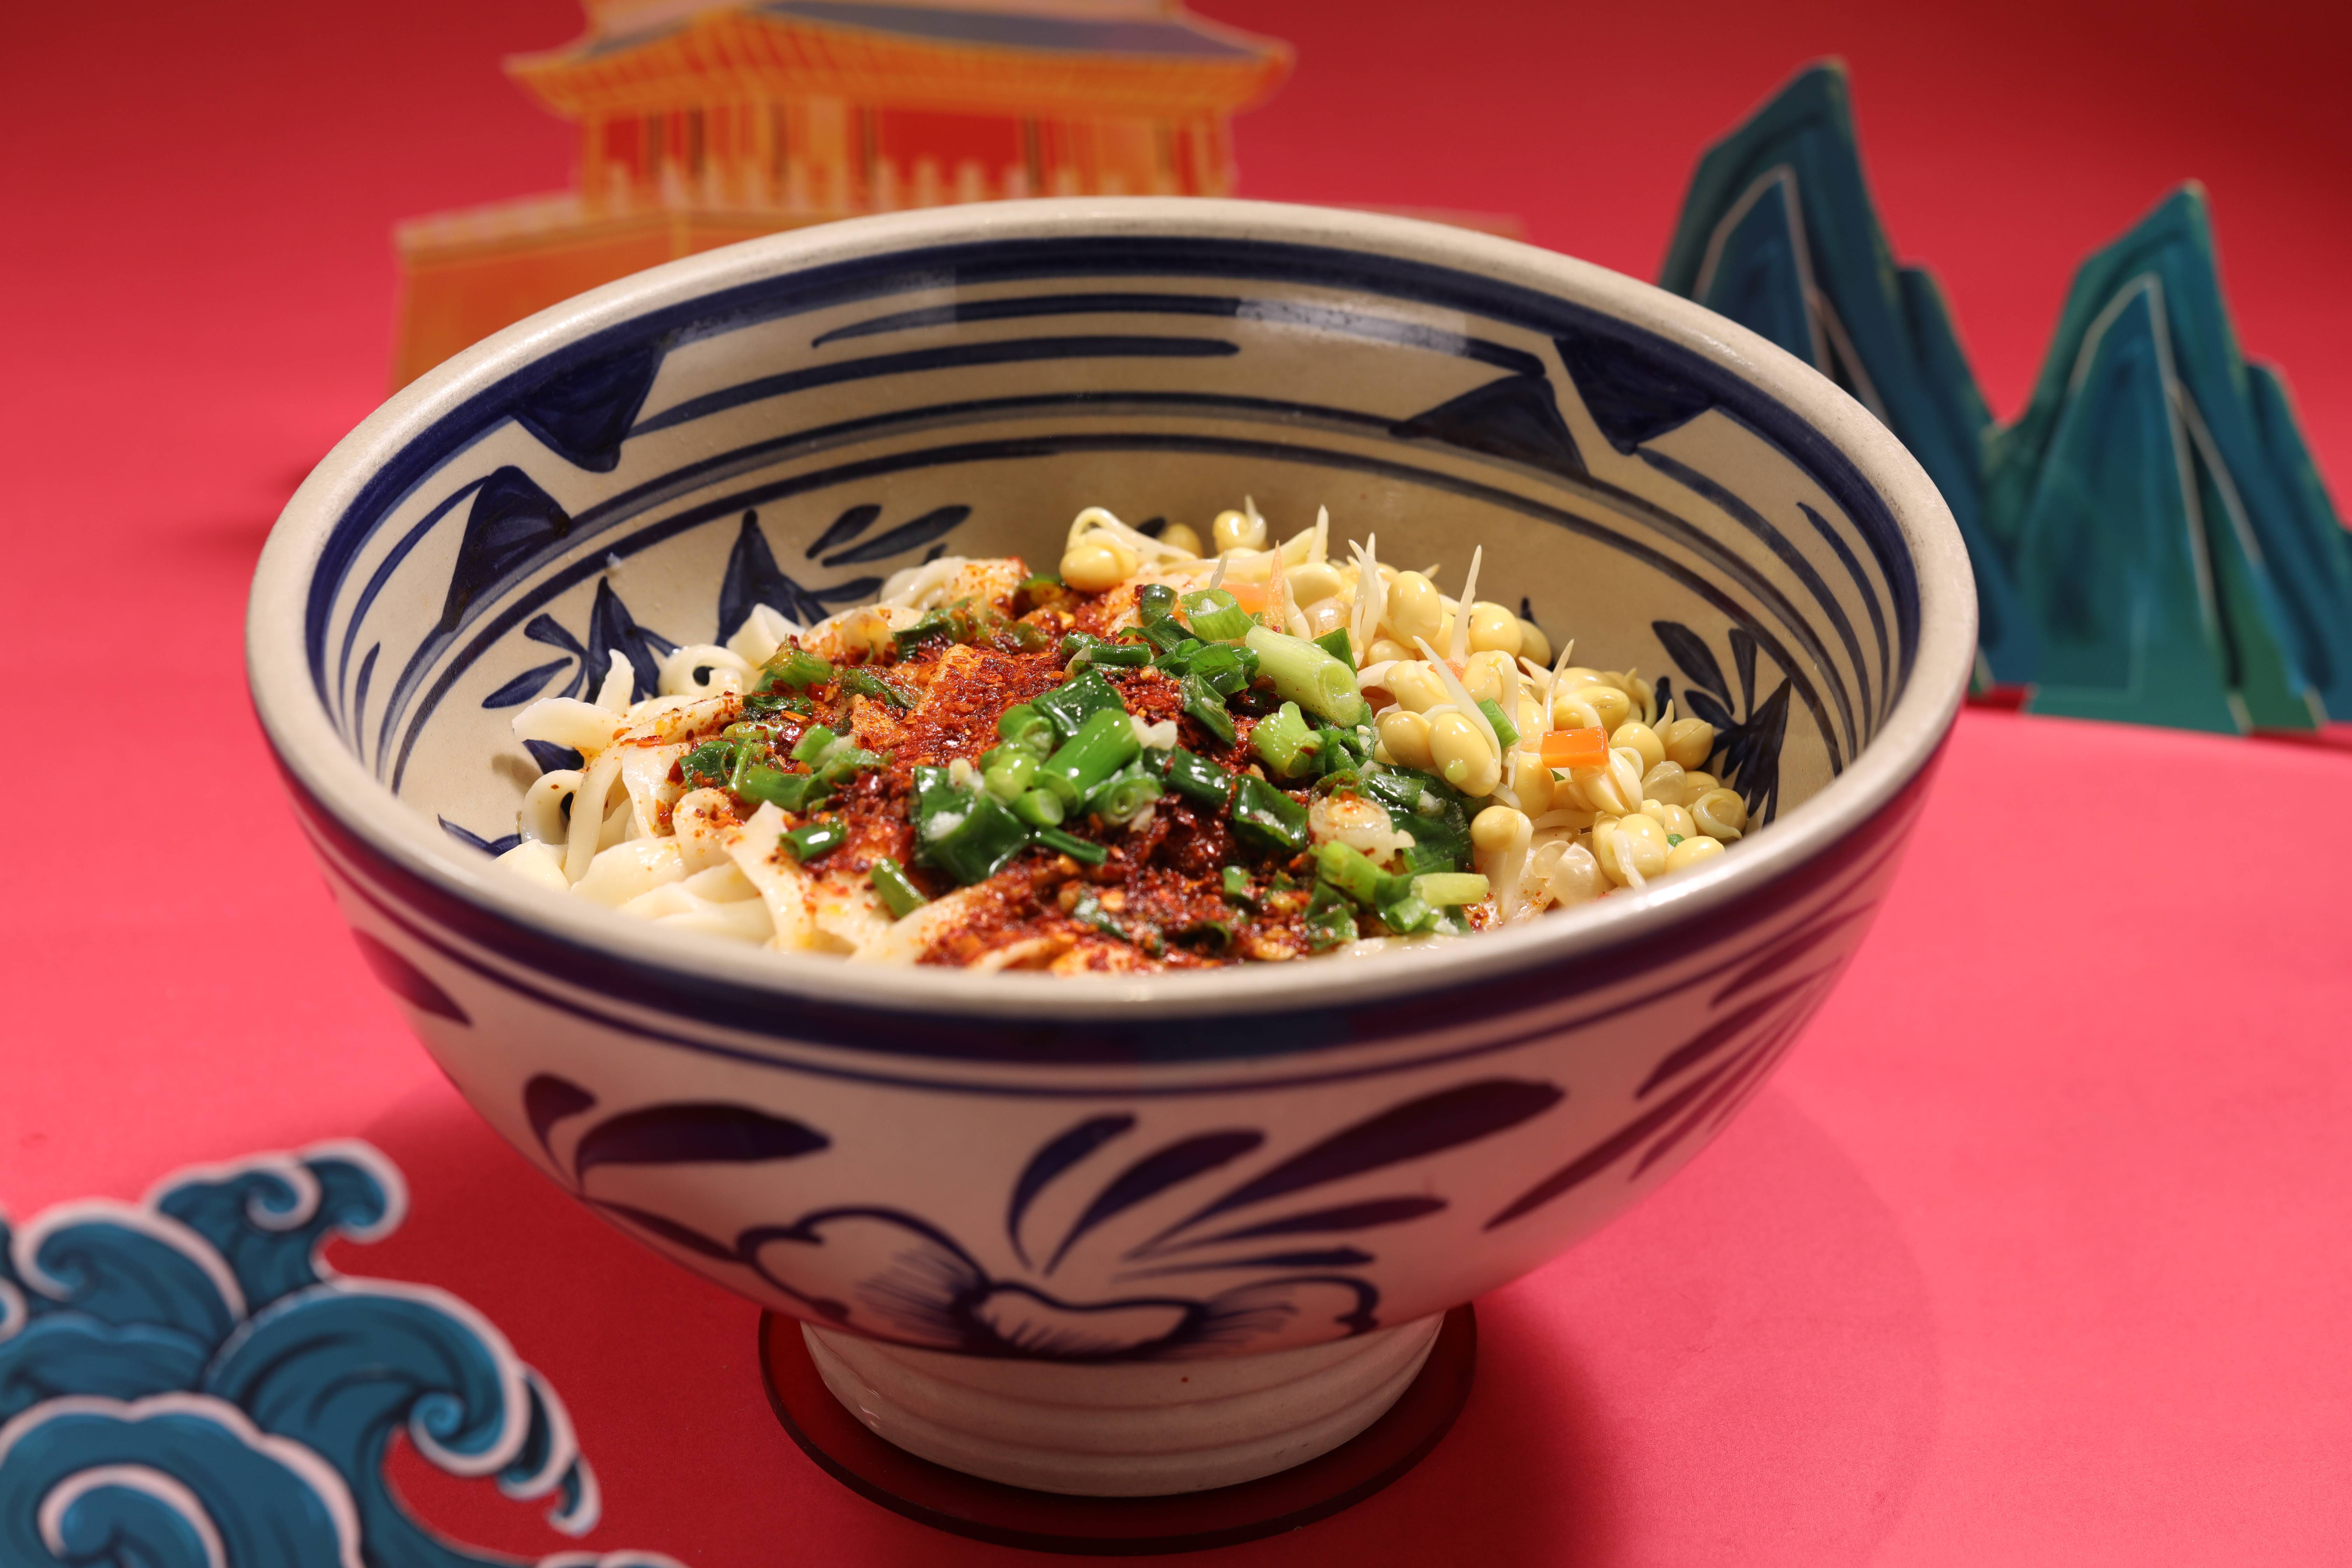 油泼面是陕西传统的特色面食之一,起源于明代,有鲜香味,酸辣味,香辣味